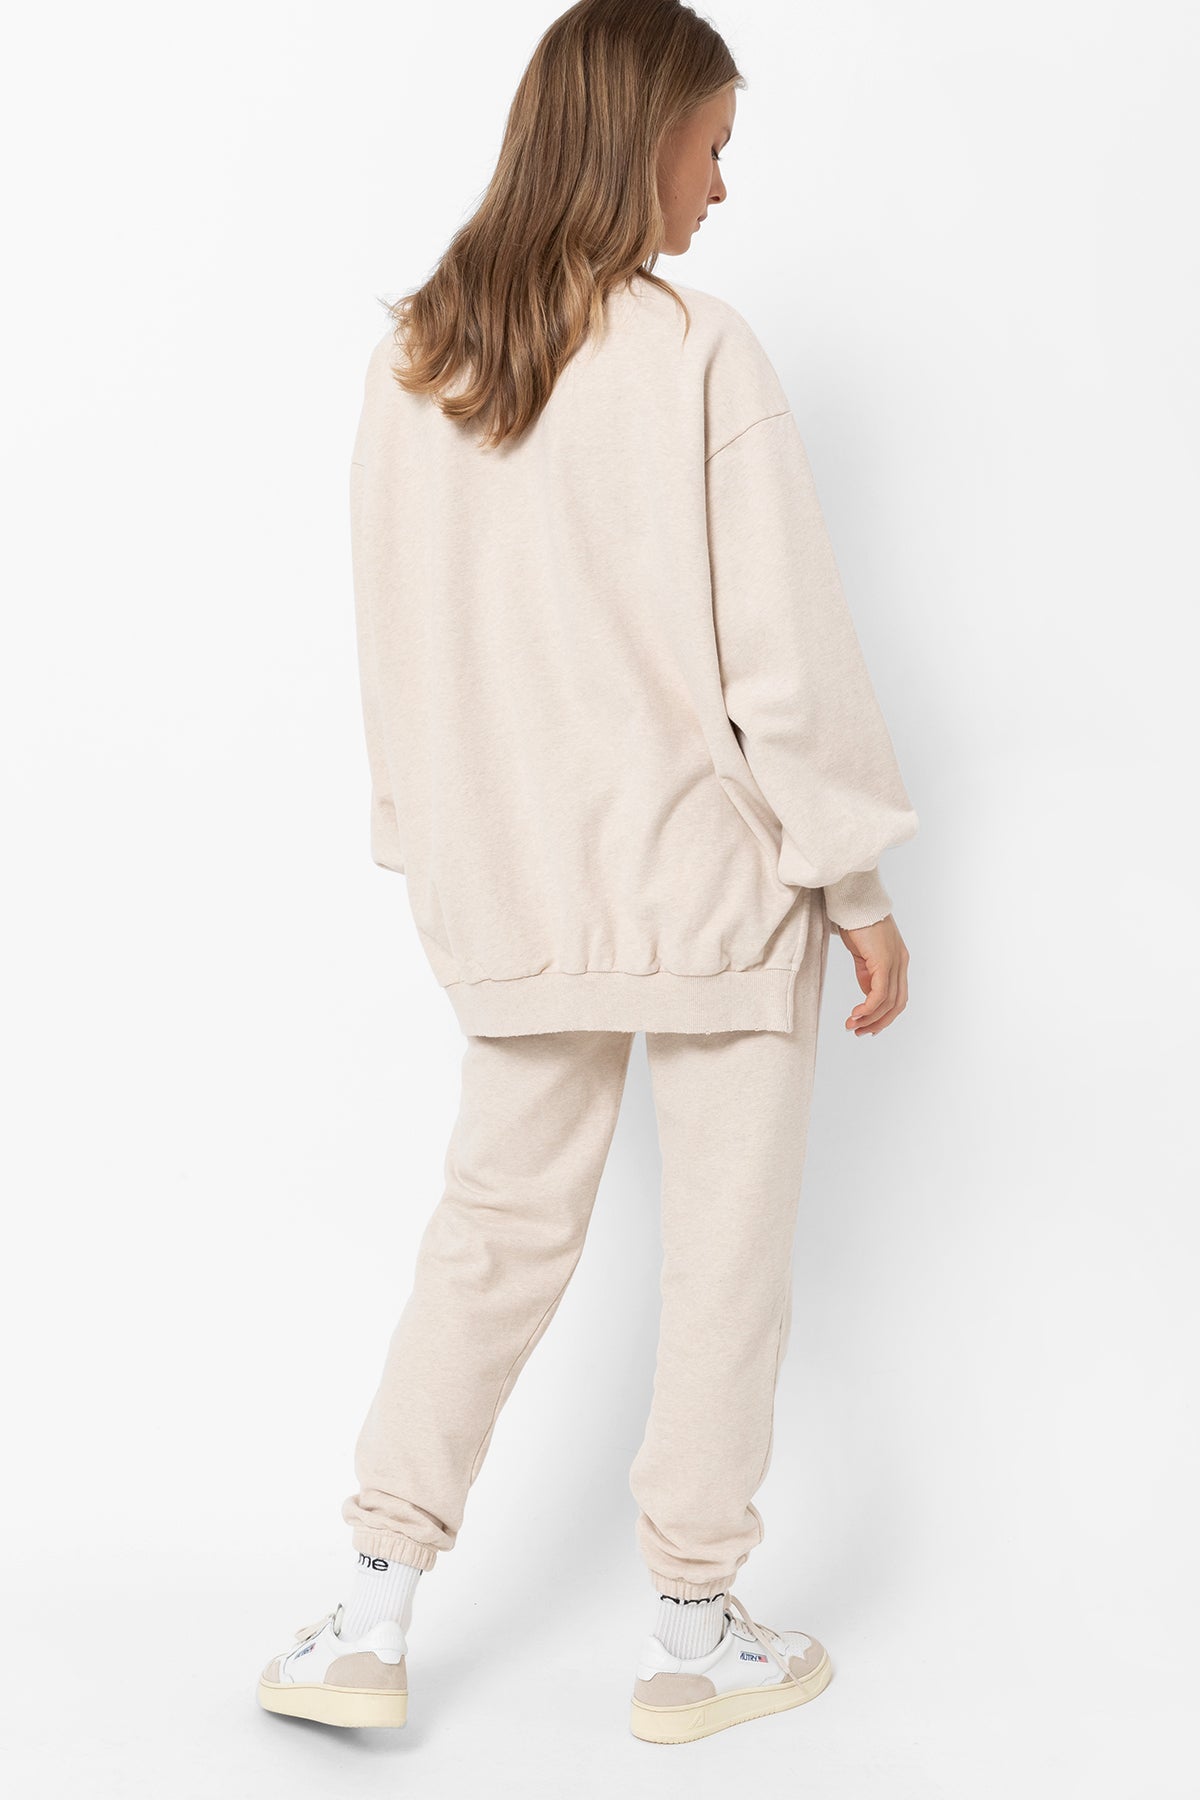 Ulla Oversized Sweatshirt | Marled Ivory